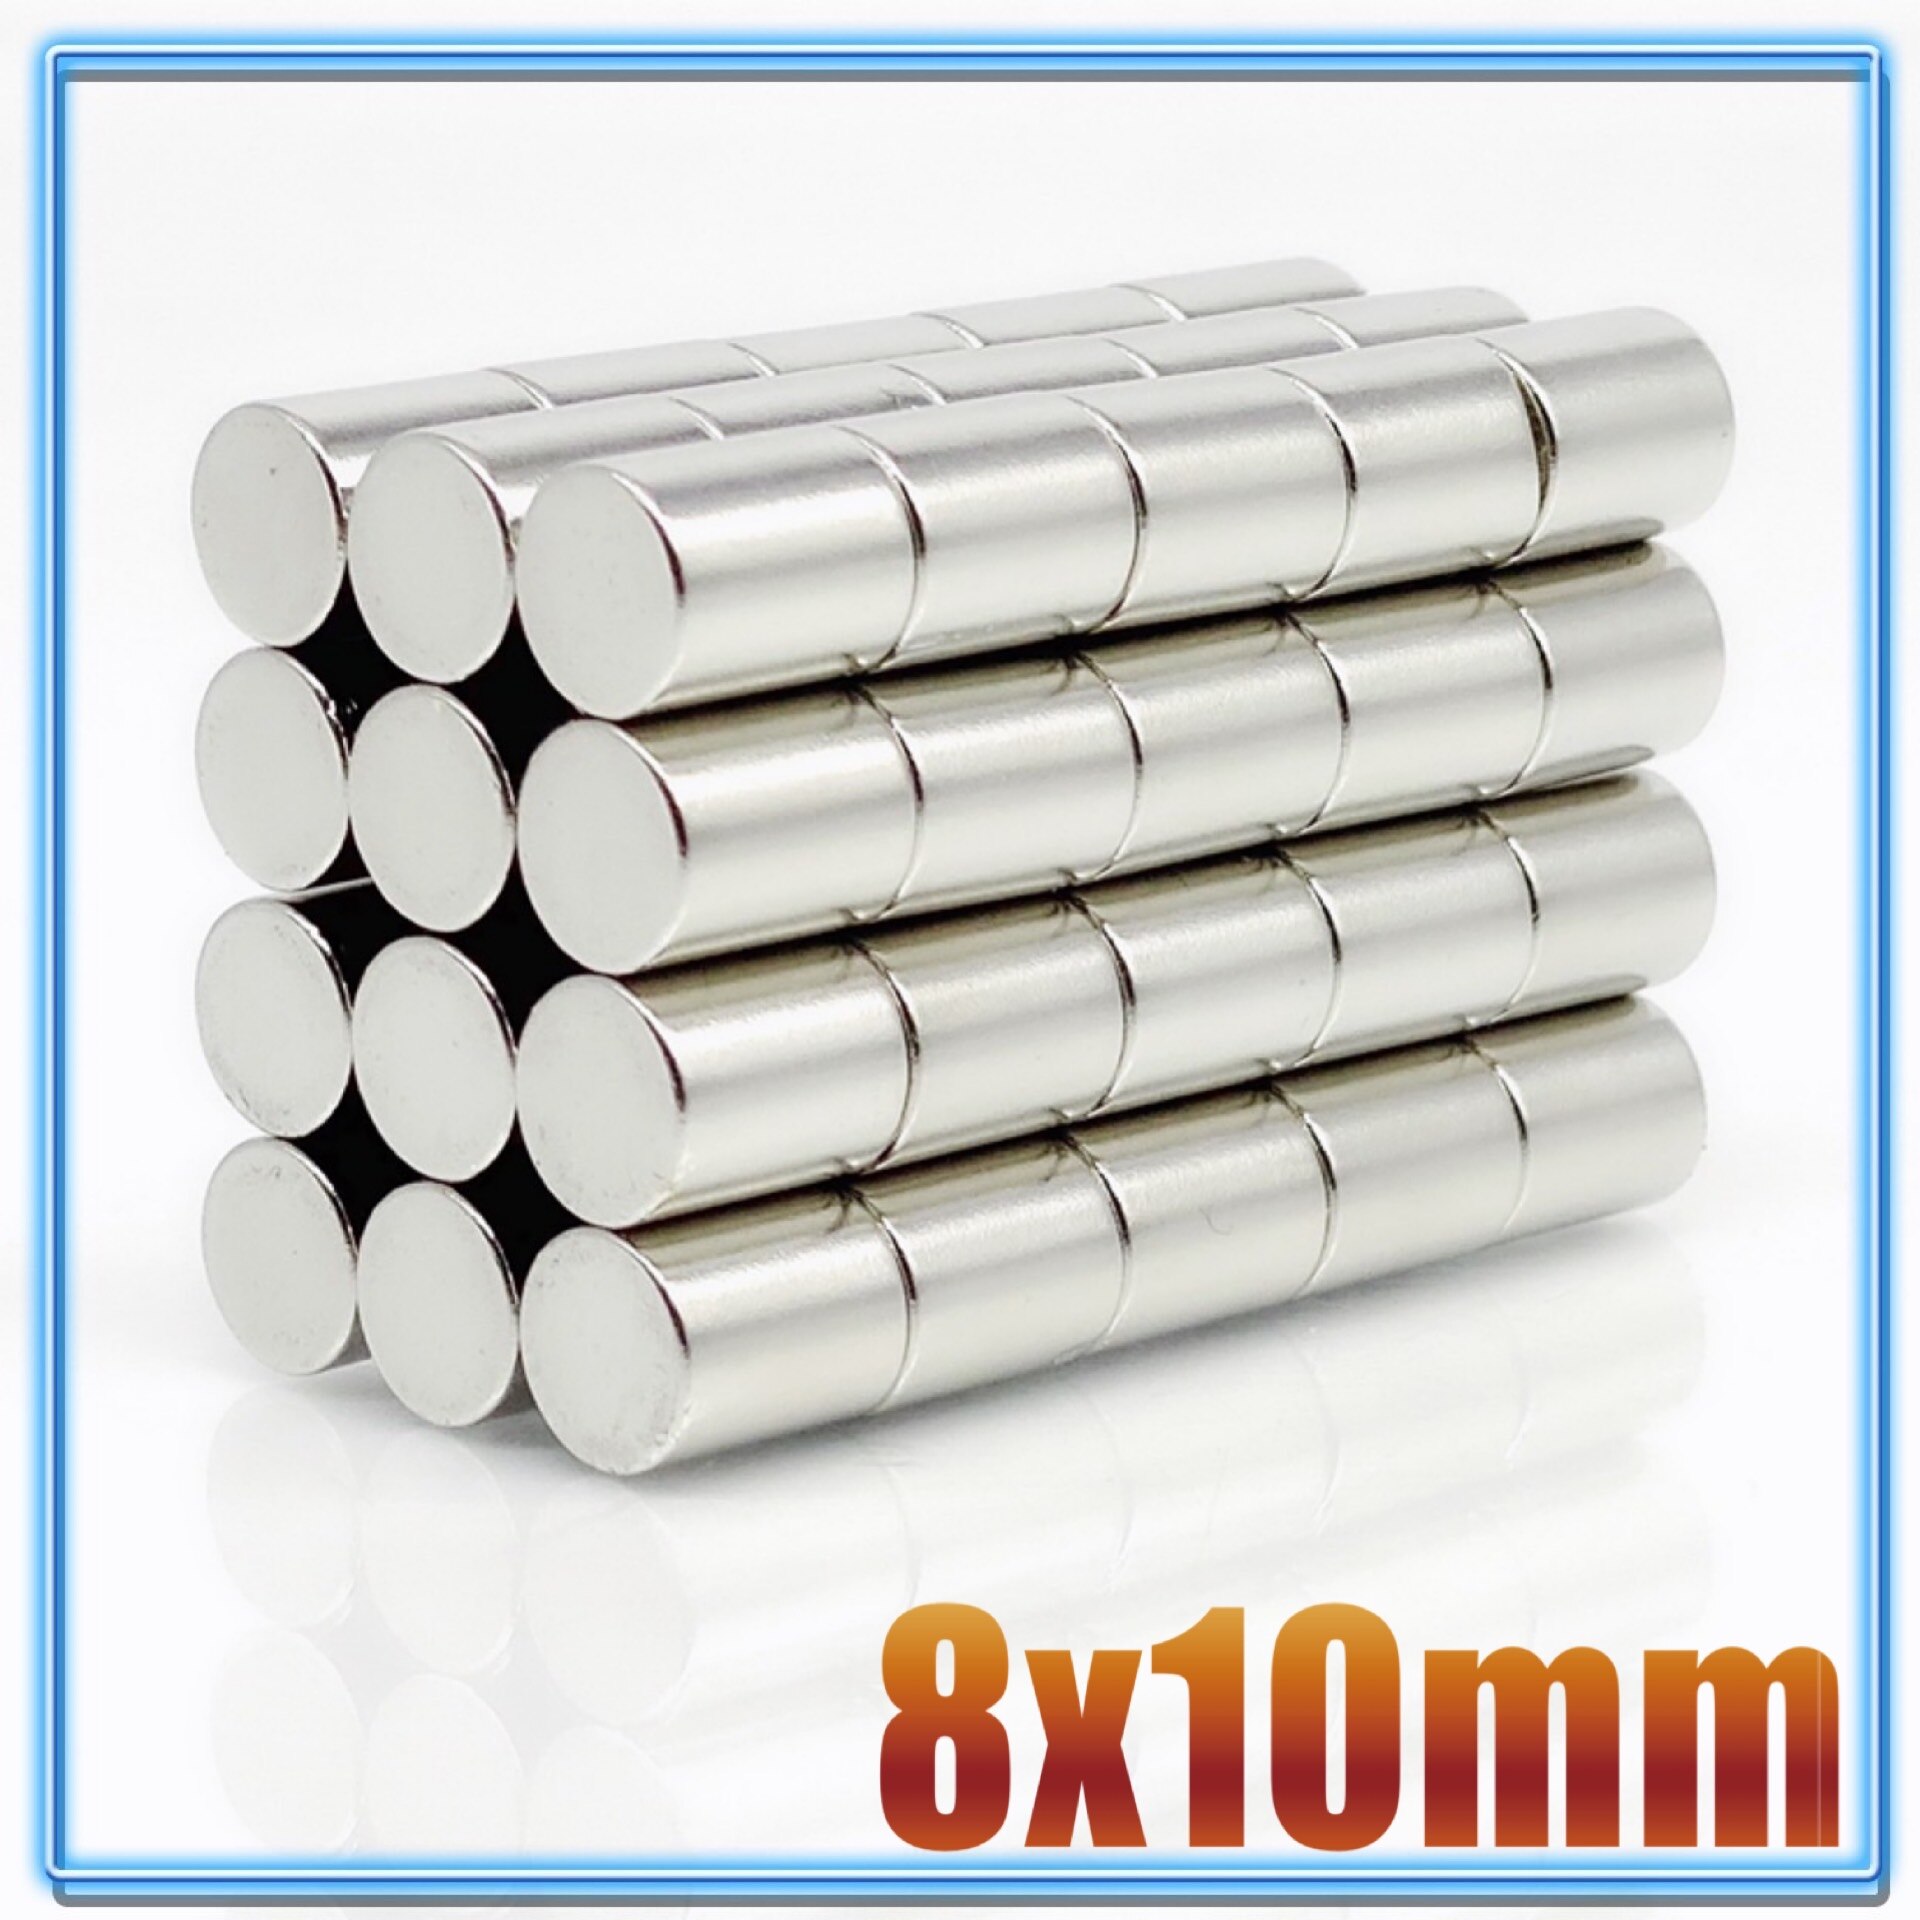 100 stk  n35 rund magnet 8 x 1 8 x 1.5 8 x 2 8 x 3 8 x 4 8 x 5 8 x 6 8 x 10 mm neodymmagnet permanent ndfeb superstærke kraftige magneter: 8 x 10(100 stk)